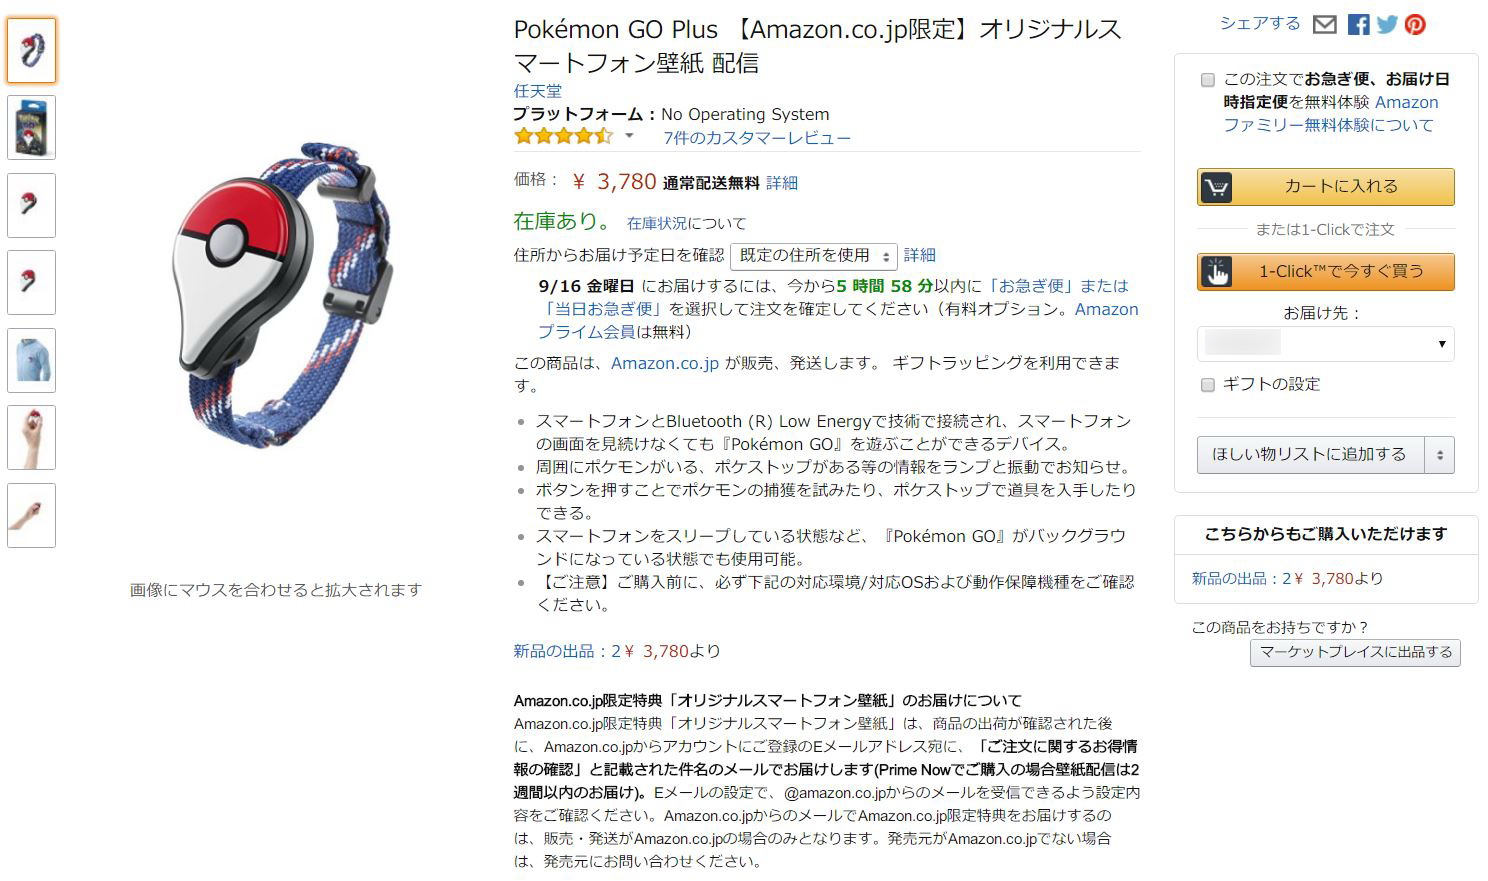 ポケモンGO PlusがAmazonで販売開始、7時45分時点でまだ購入可。ポケセンオンラインは混雑でアクセス不可に - Engadget Japanese